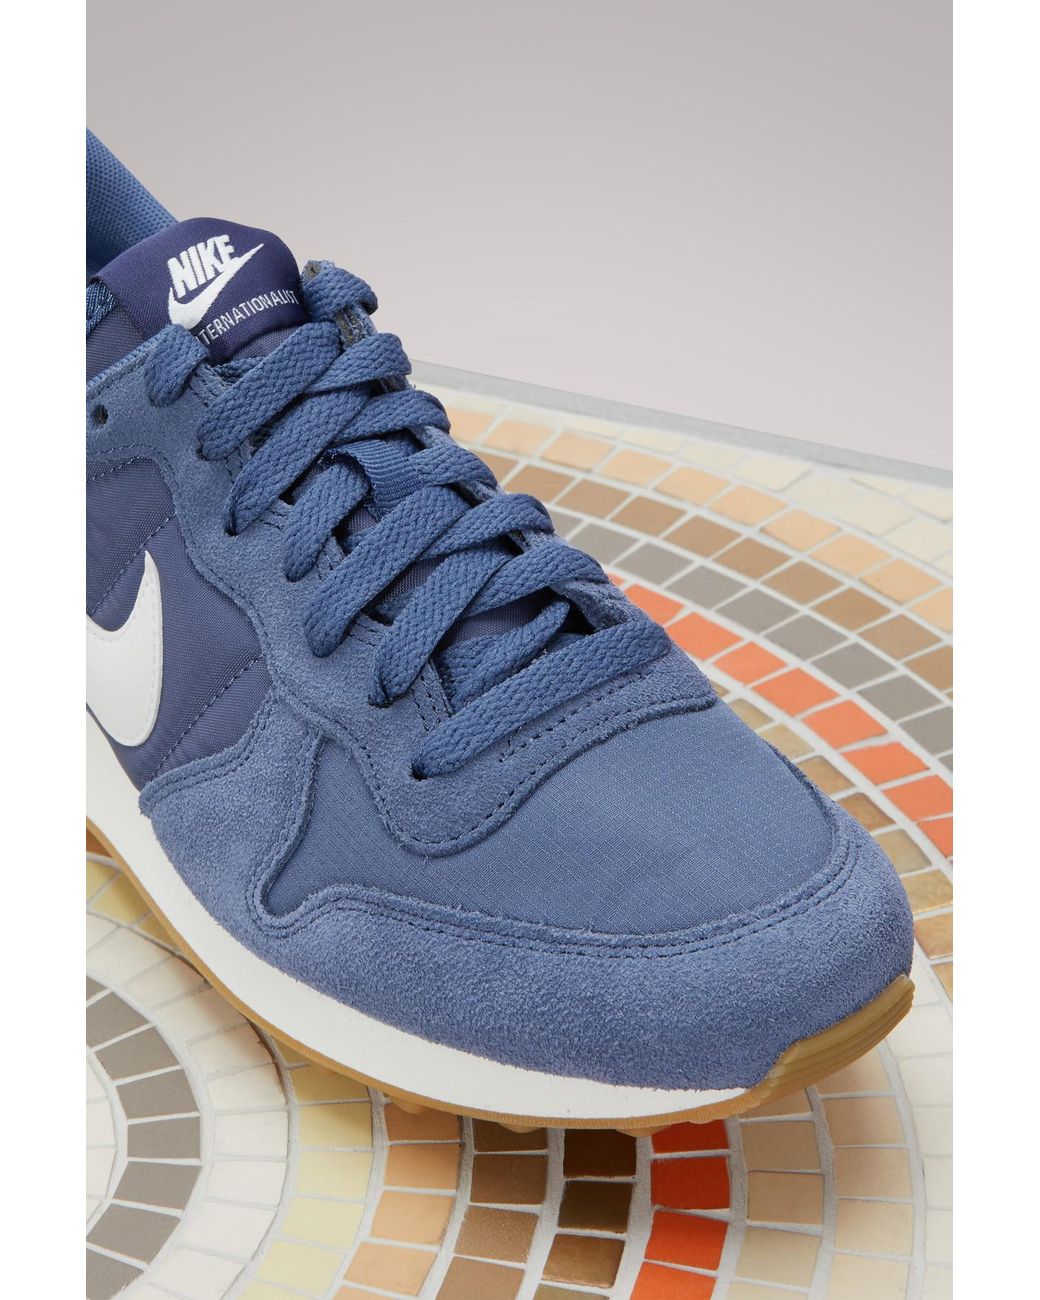 Nike Internationalist Sneakers in Blue | Lyst Australia